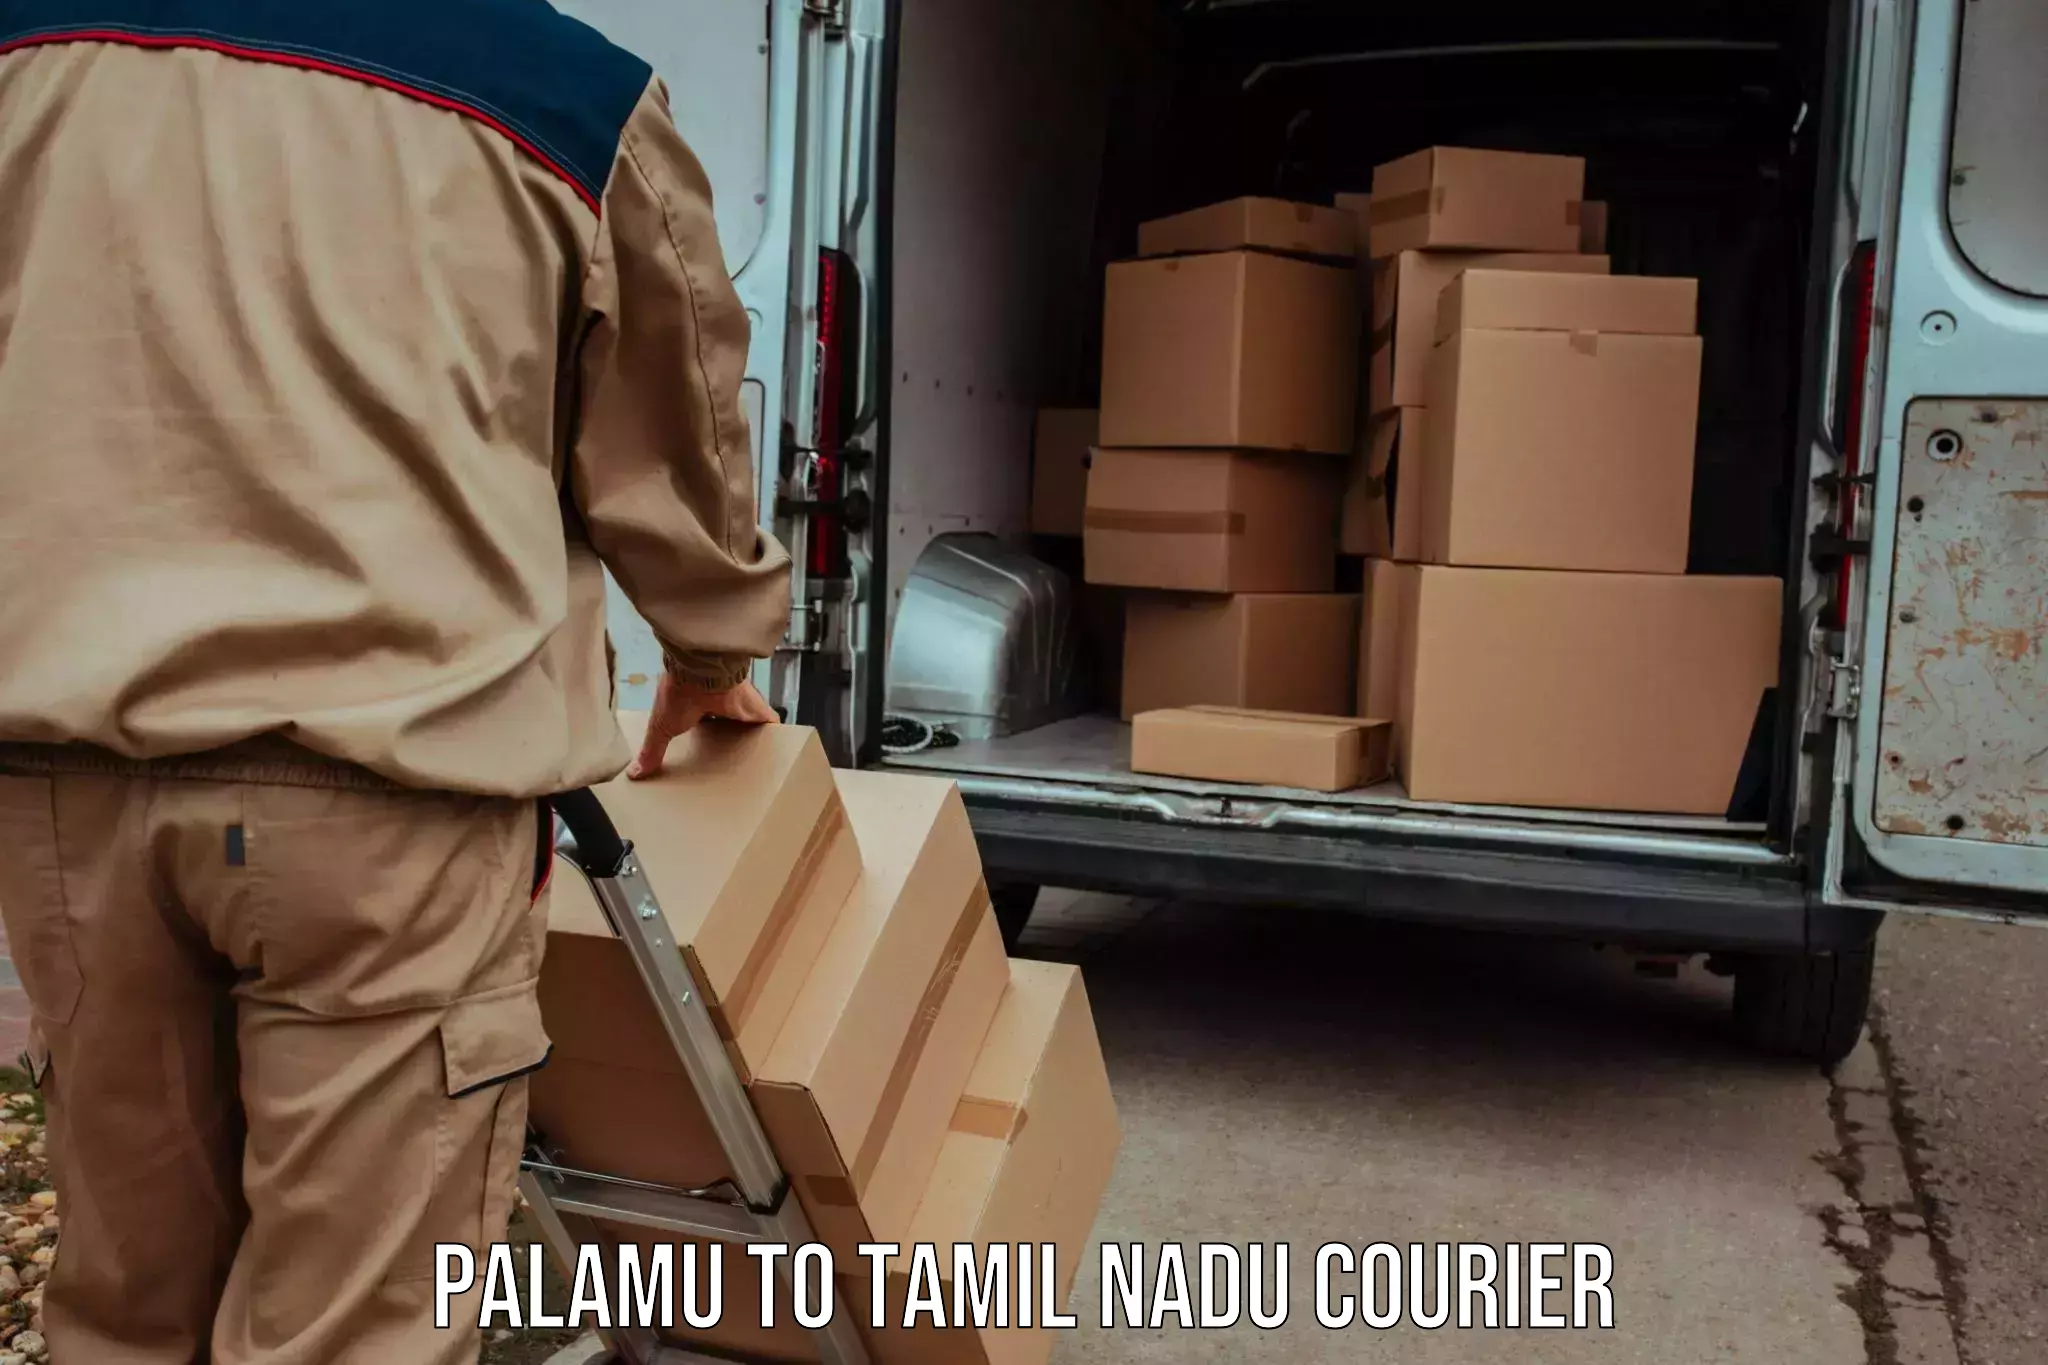 Holiday shipping services Palamu to Tamil Nadu